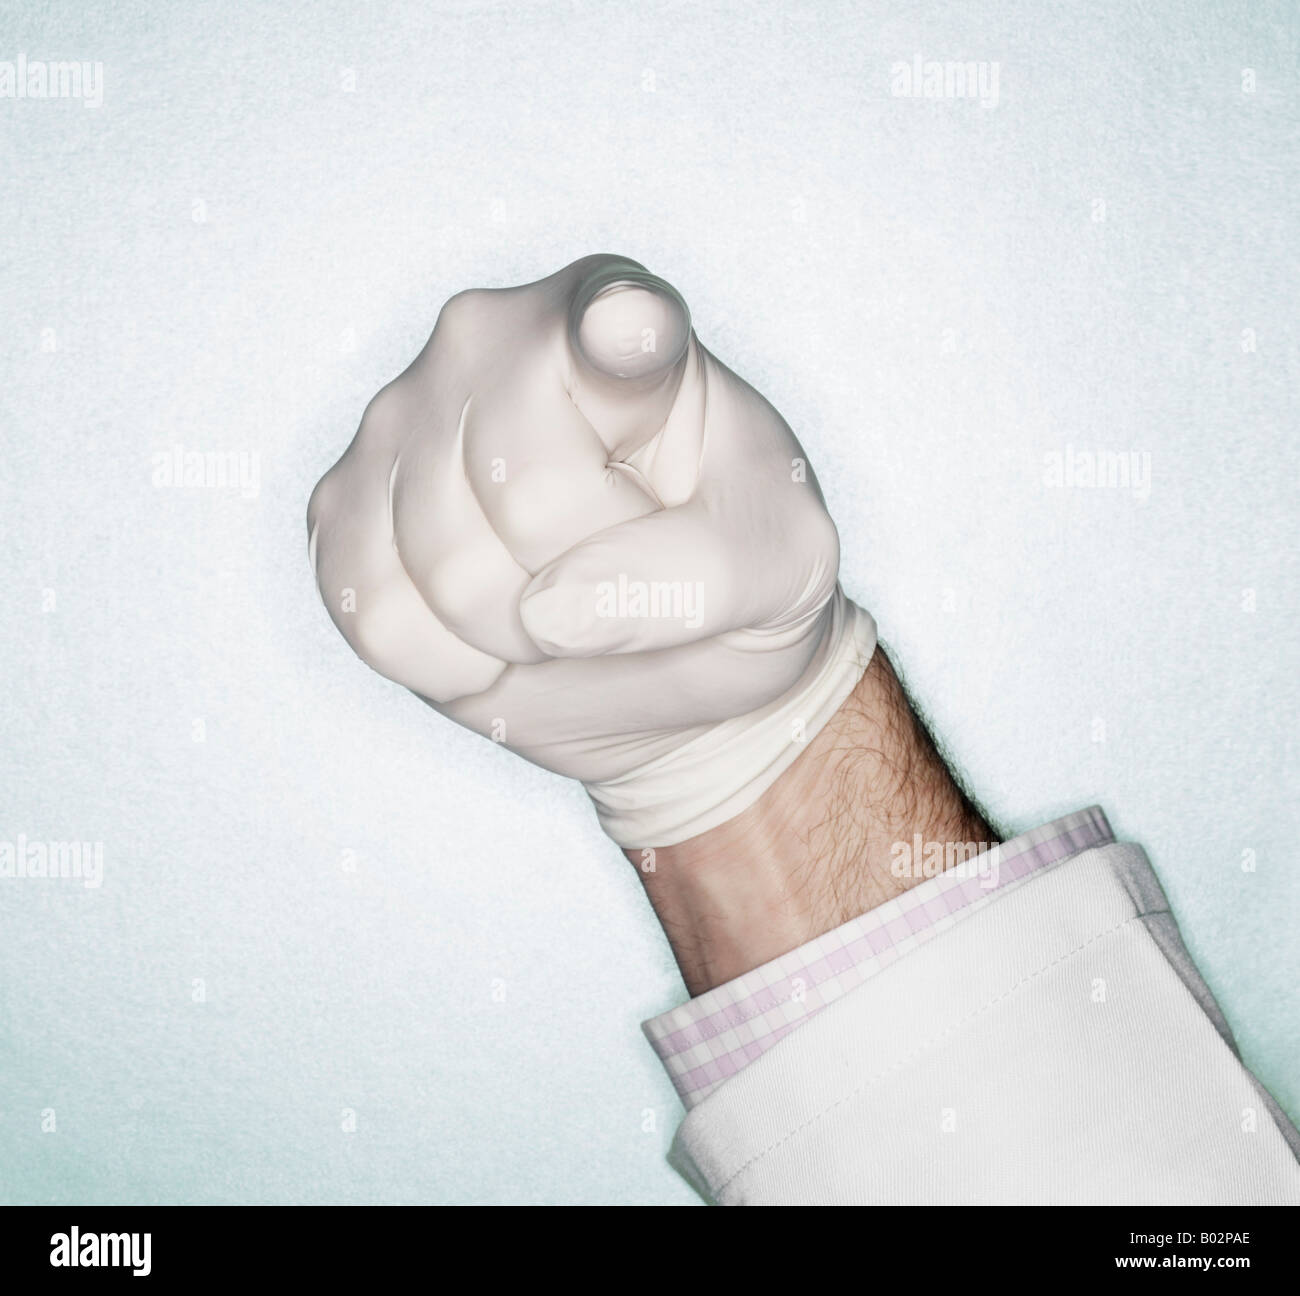 Ärzte-Finger in Latex-Handschuh für Prostatakrebs Untersuchung bereit Stockfoto